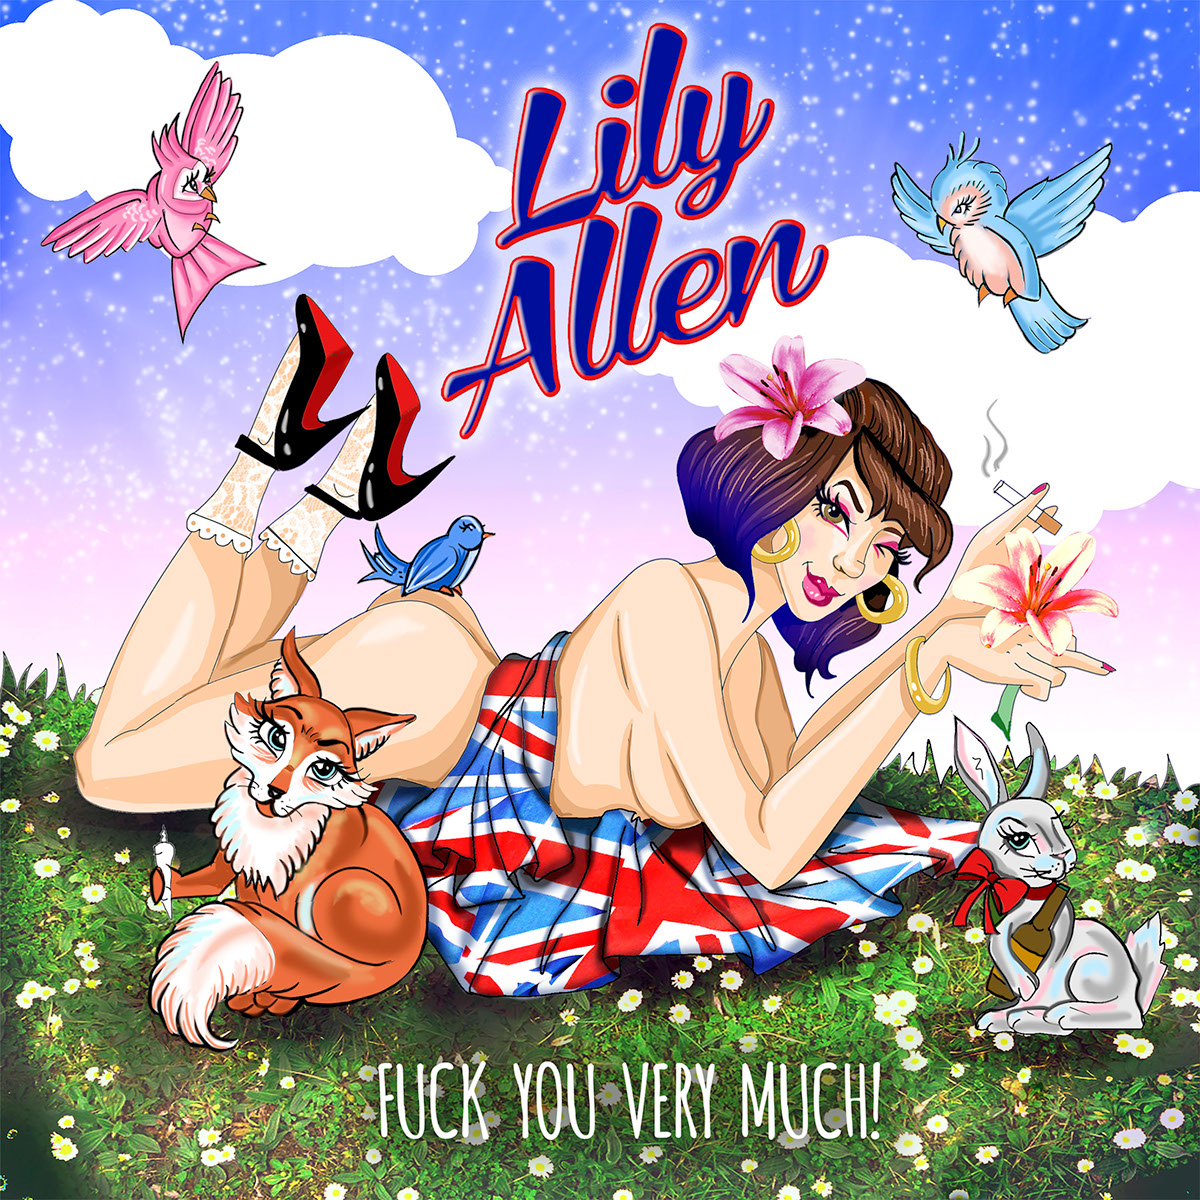 Lily Allen Album Art on Behance